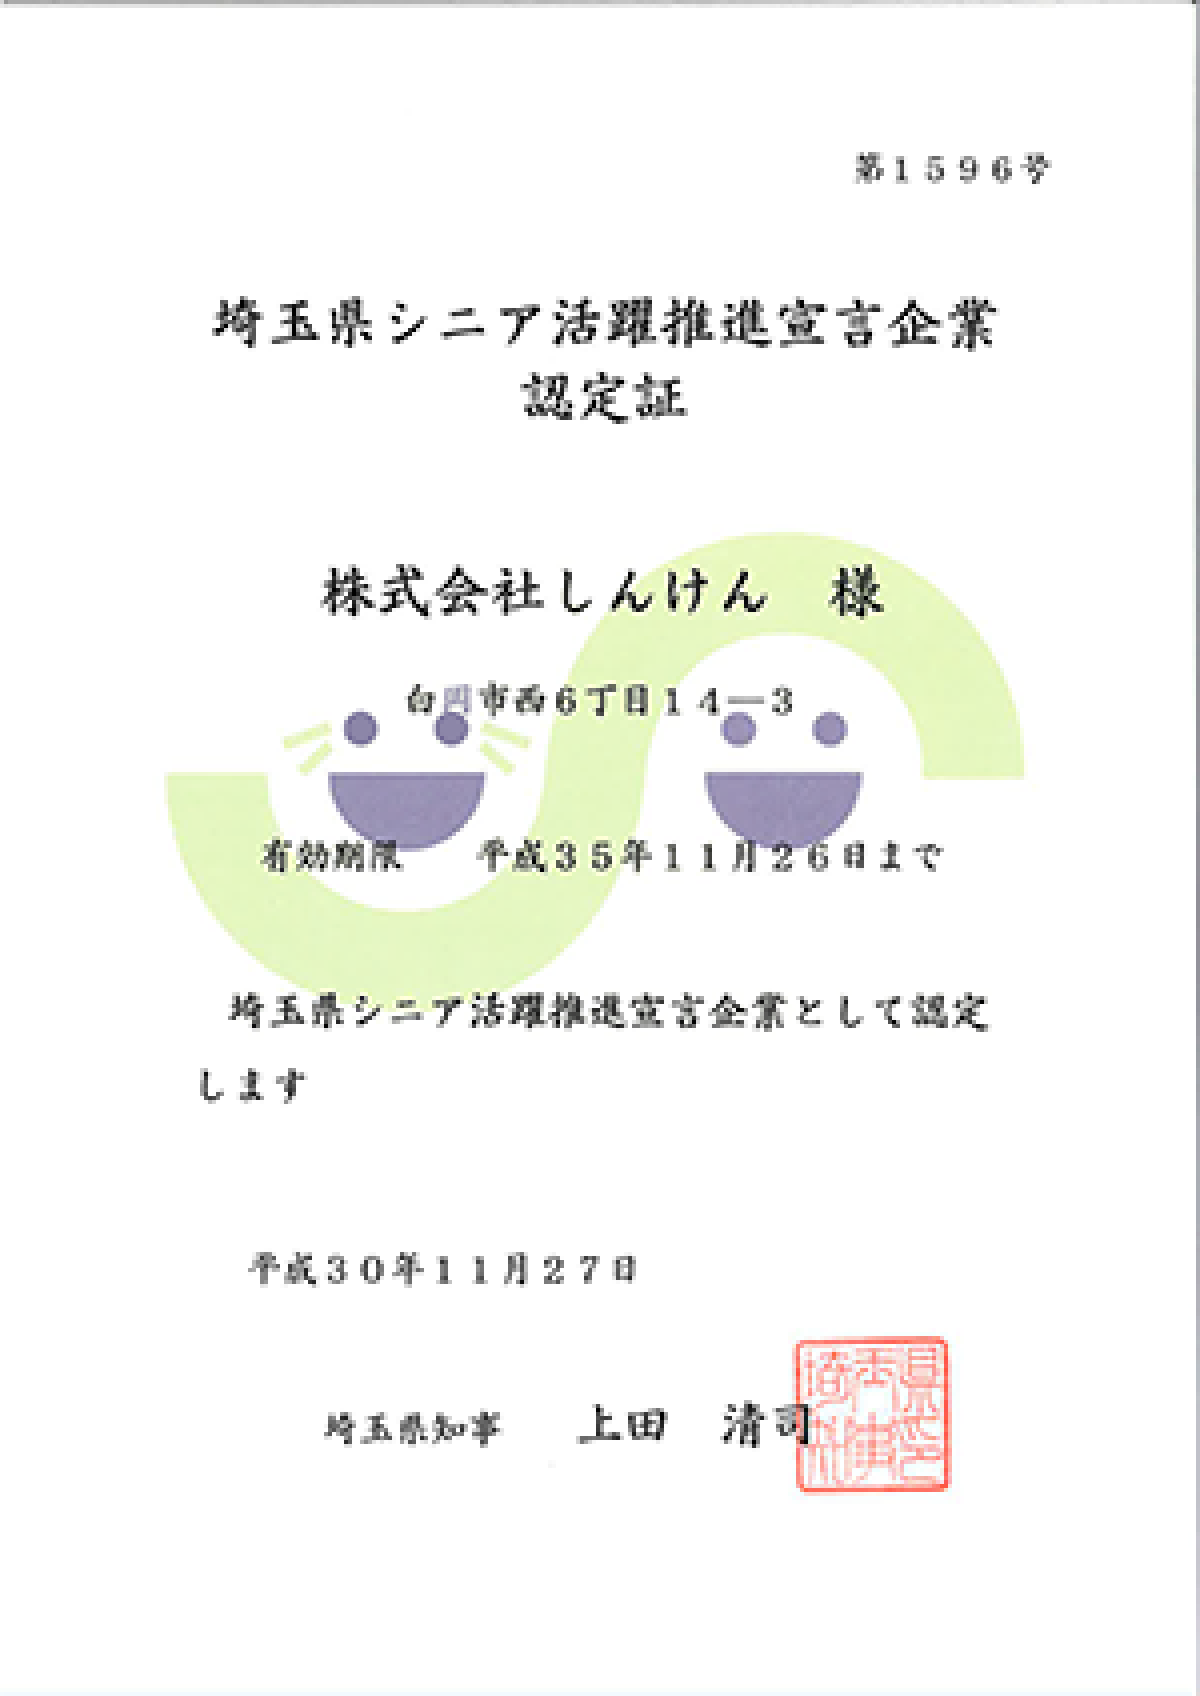 埼玉県シニア活動推進宣言企業認定証の画像